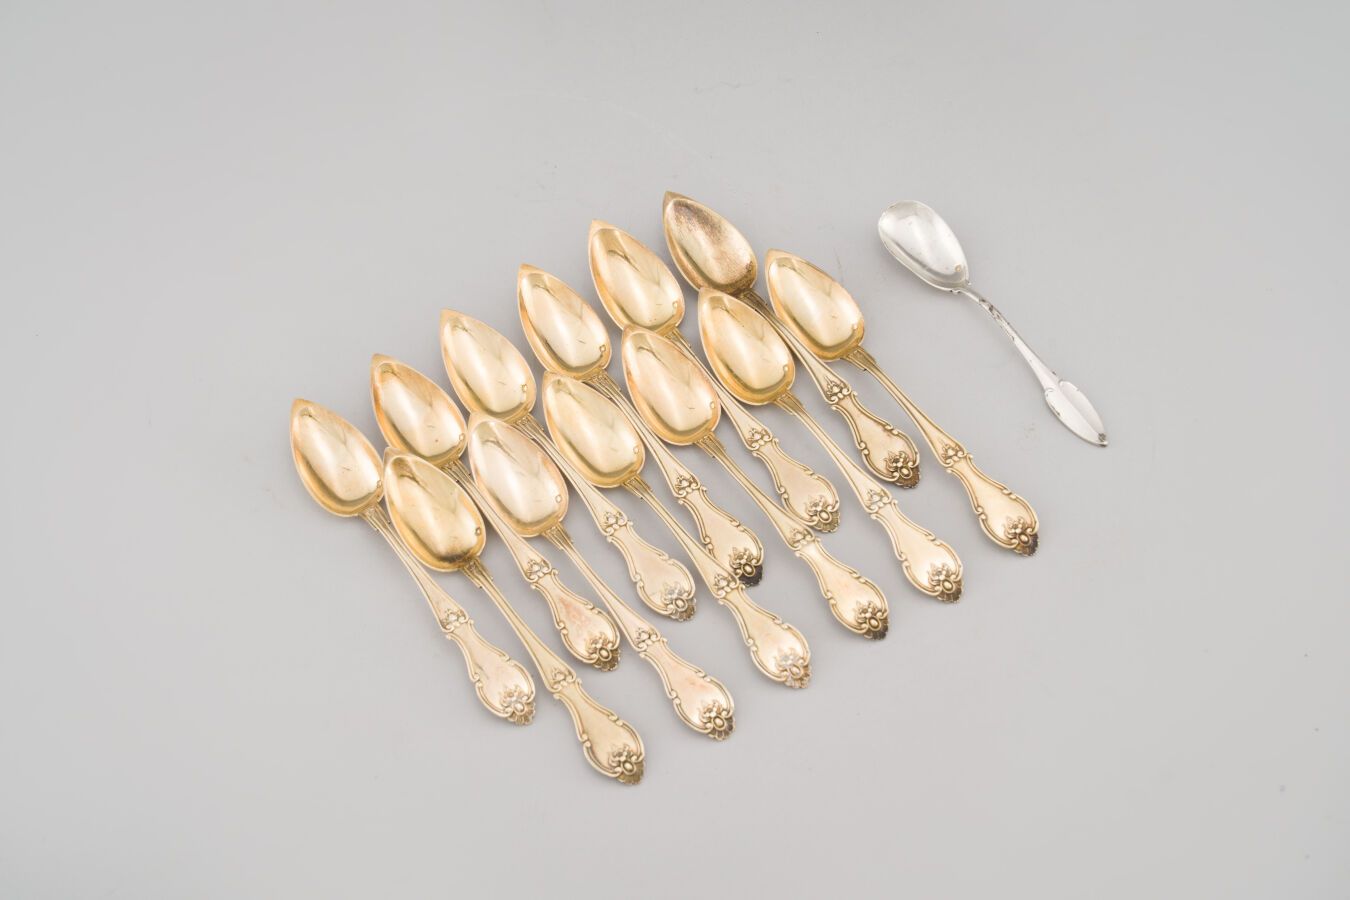 Null 88. Dodici cucchiai da tè in argento dorato (800/1000),
modello a violino.
&hellip;